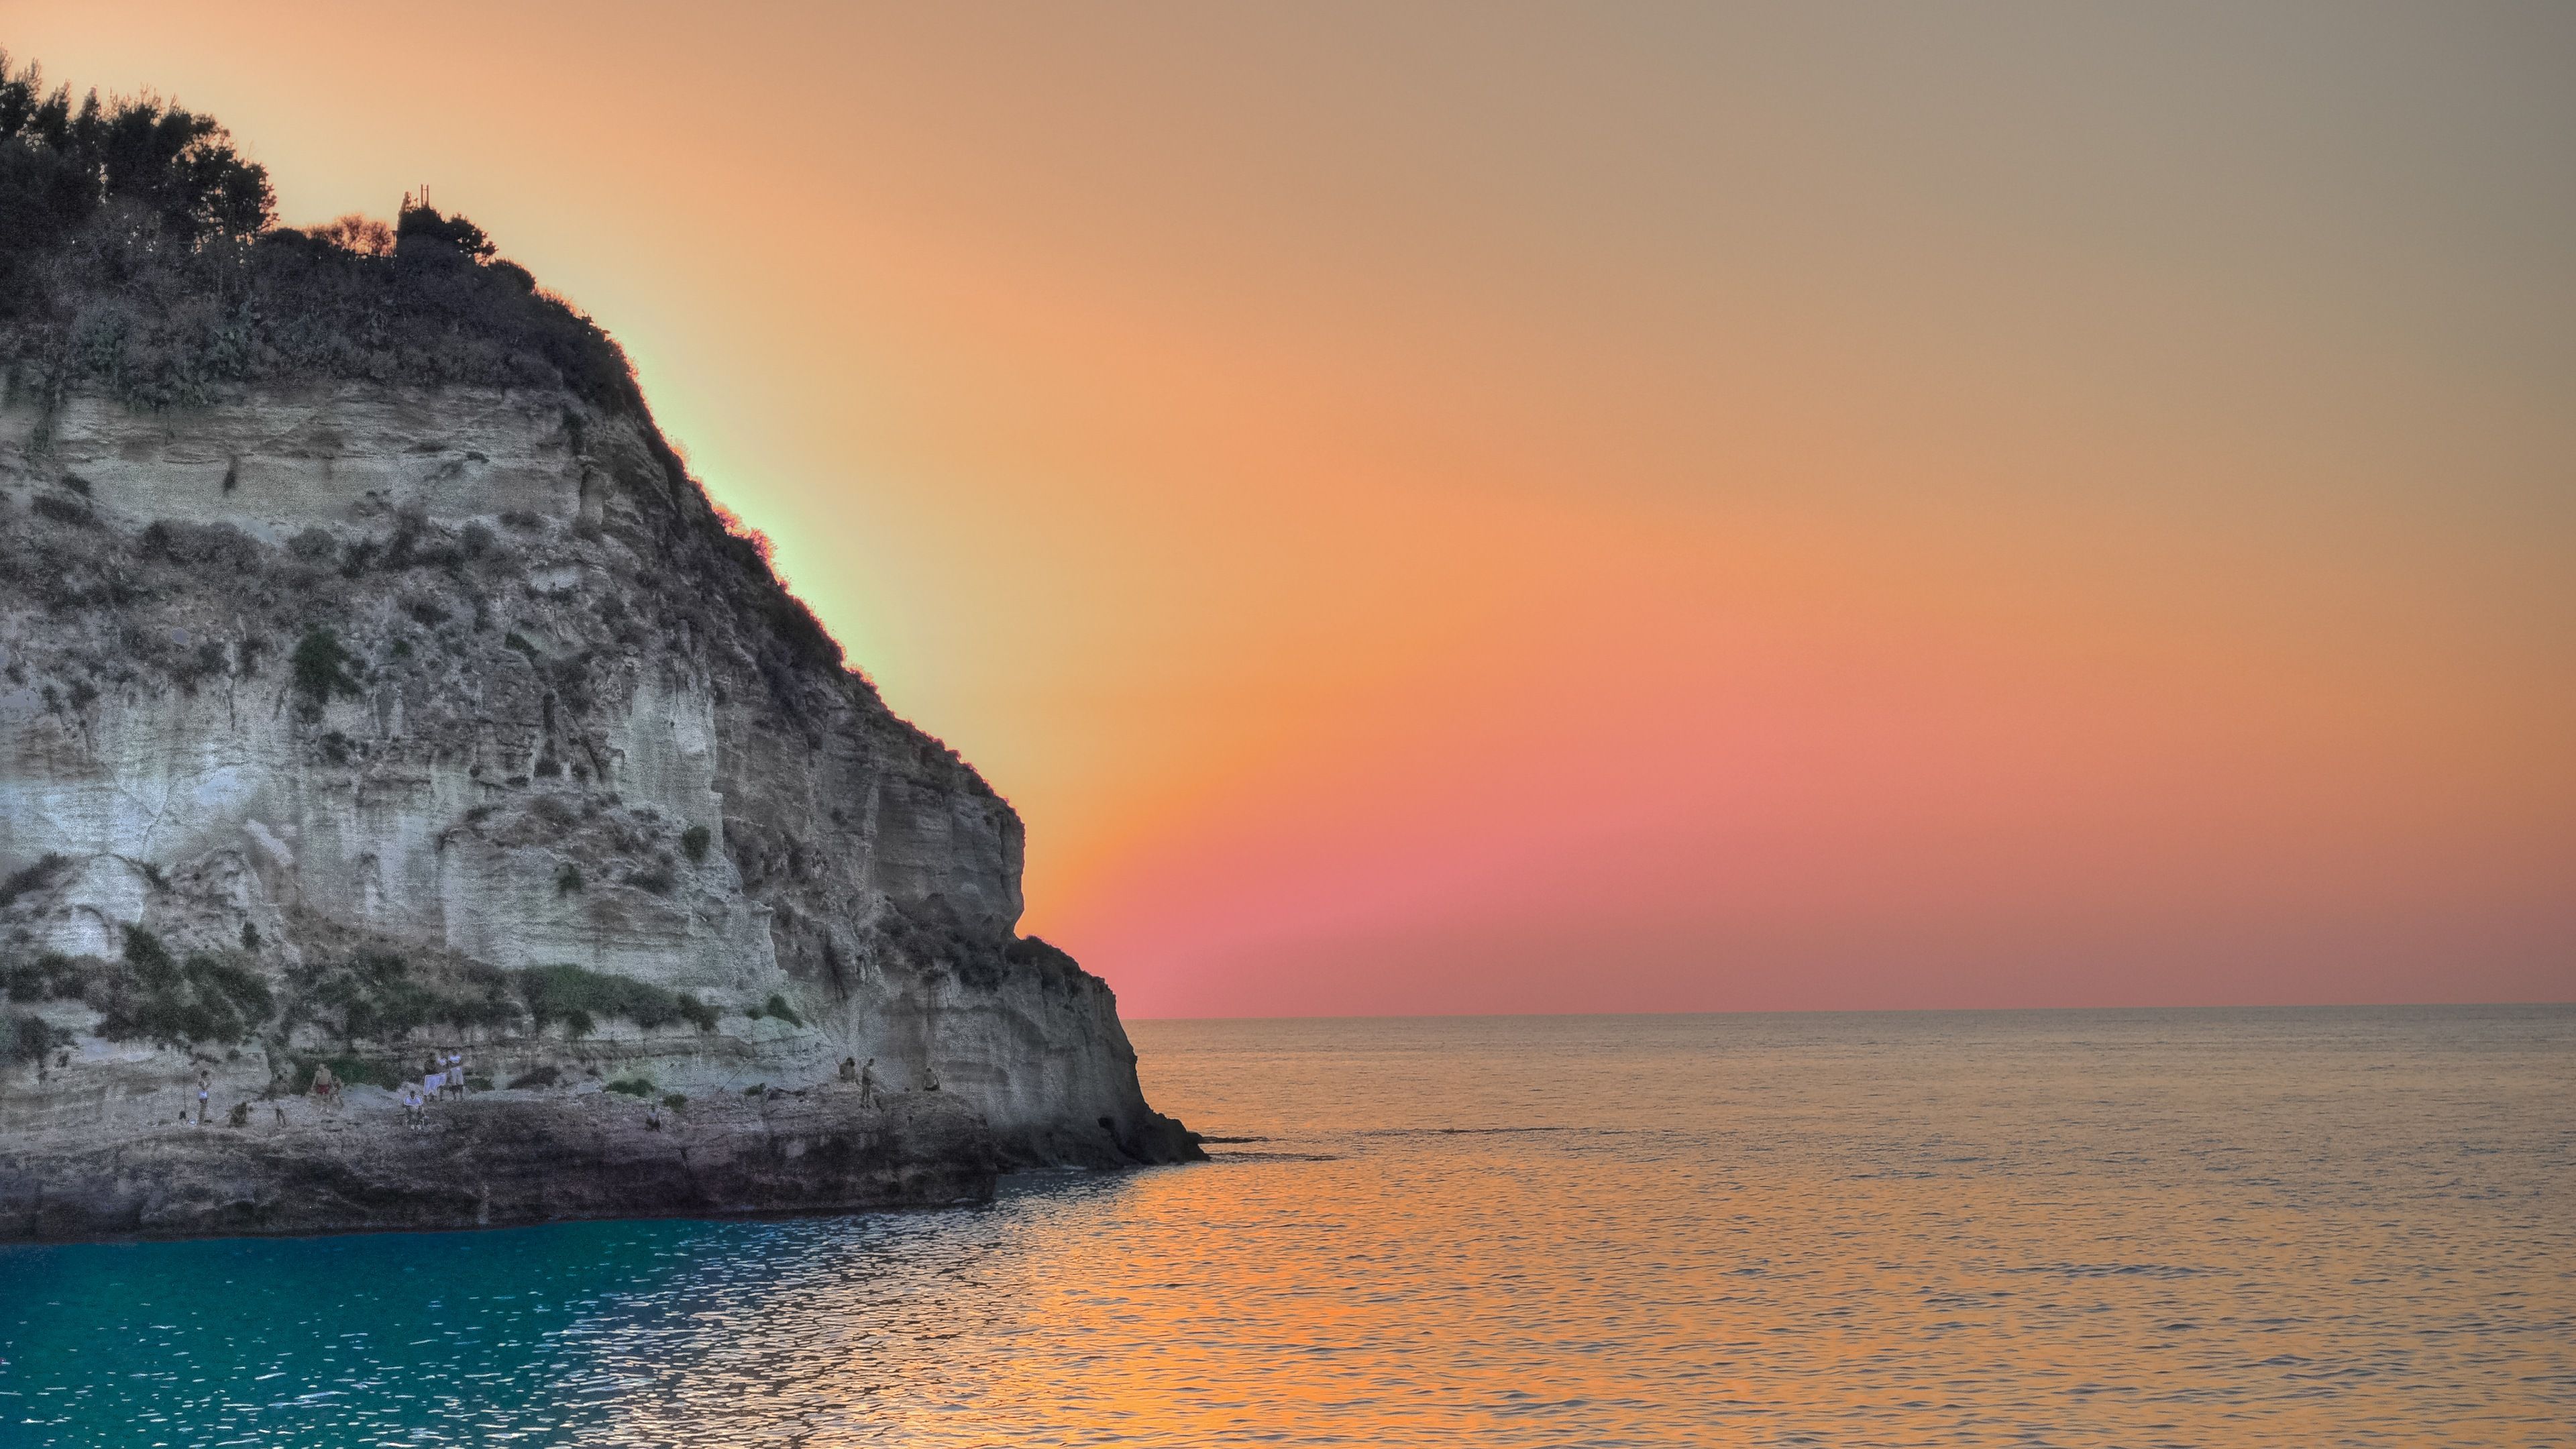 Ocean Sun Setting Behind Cliff 4K Ultra HD Desktop Wallpaper